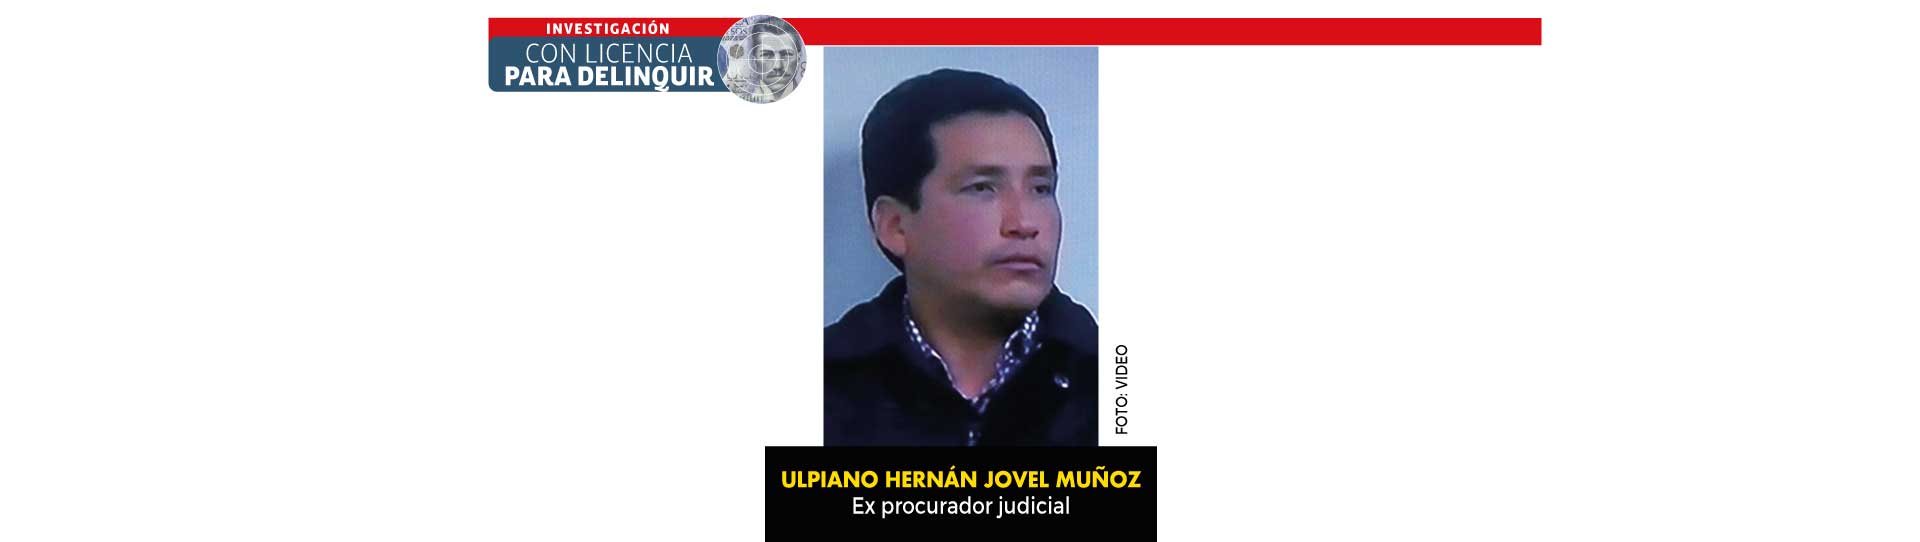 Con licencia para delinquir Cundinamarca: el gobernador que pagaba sobornos